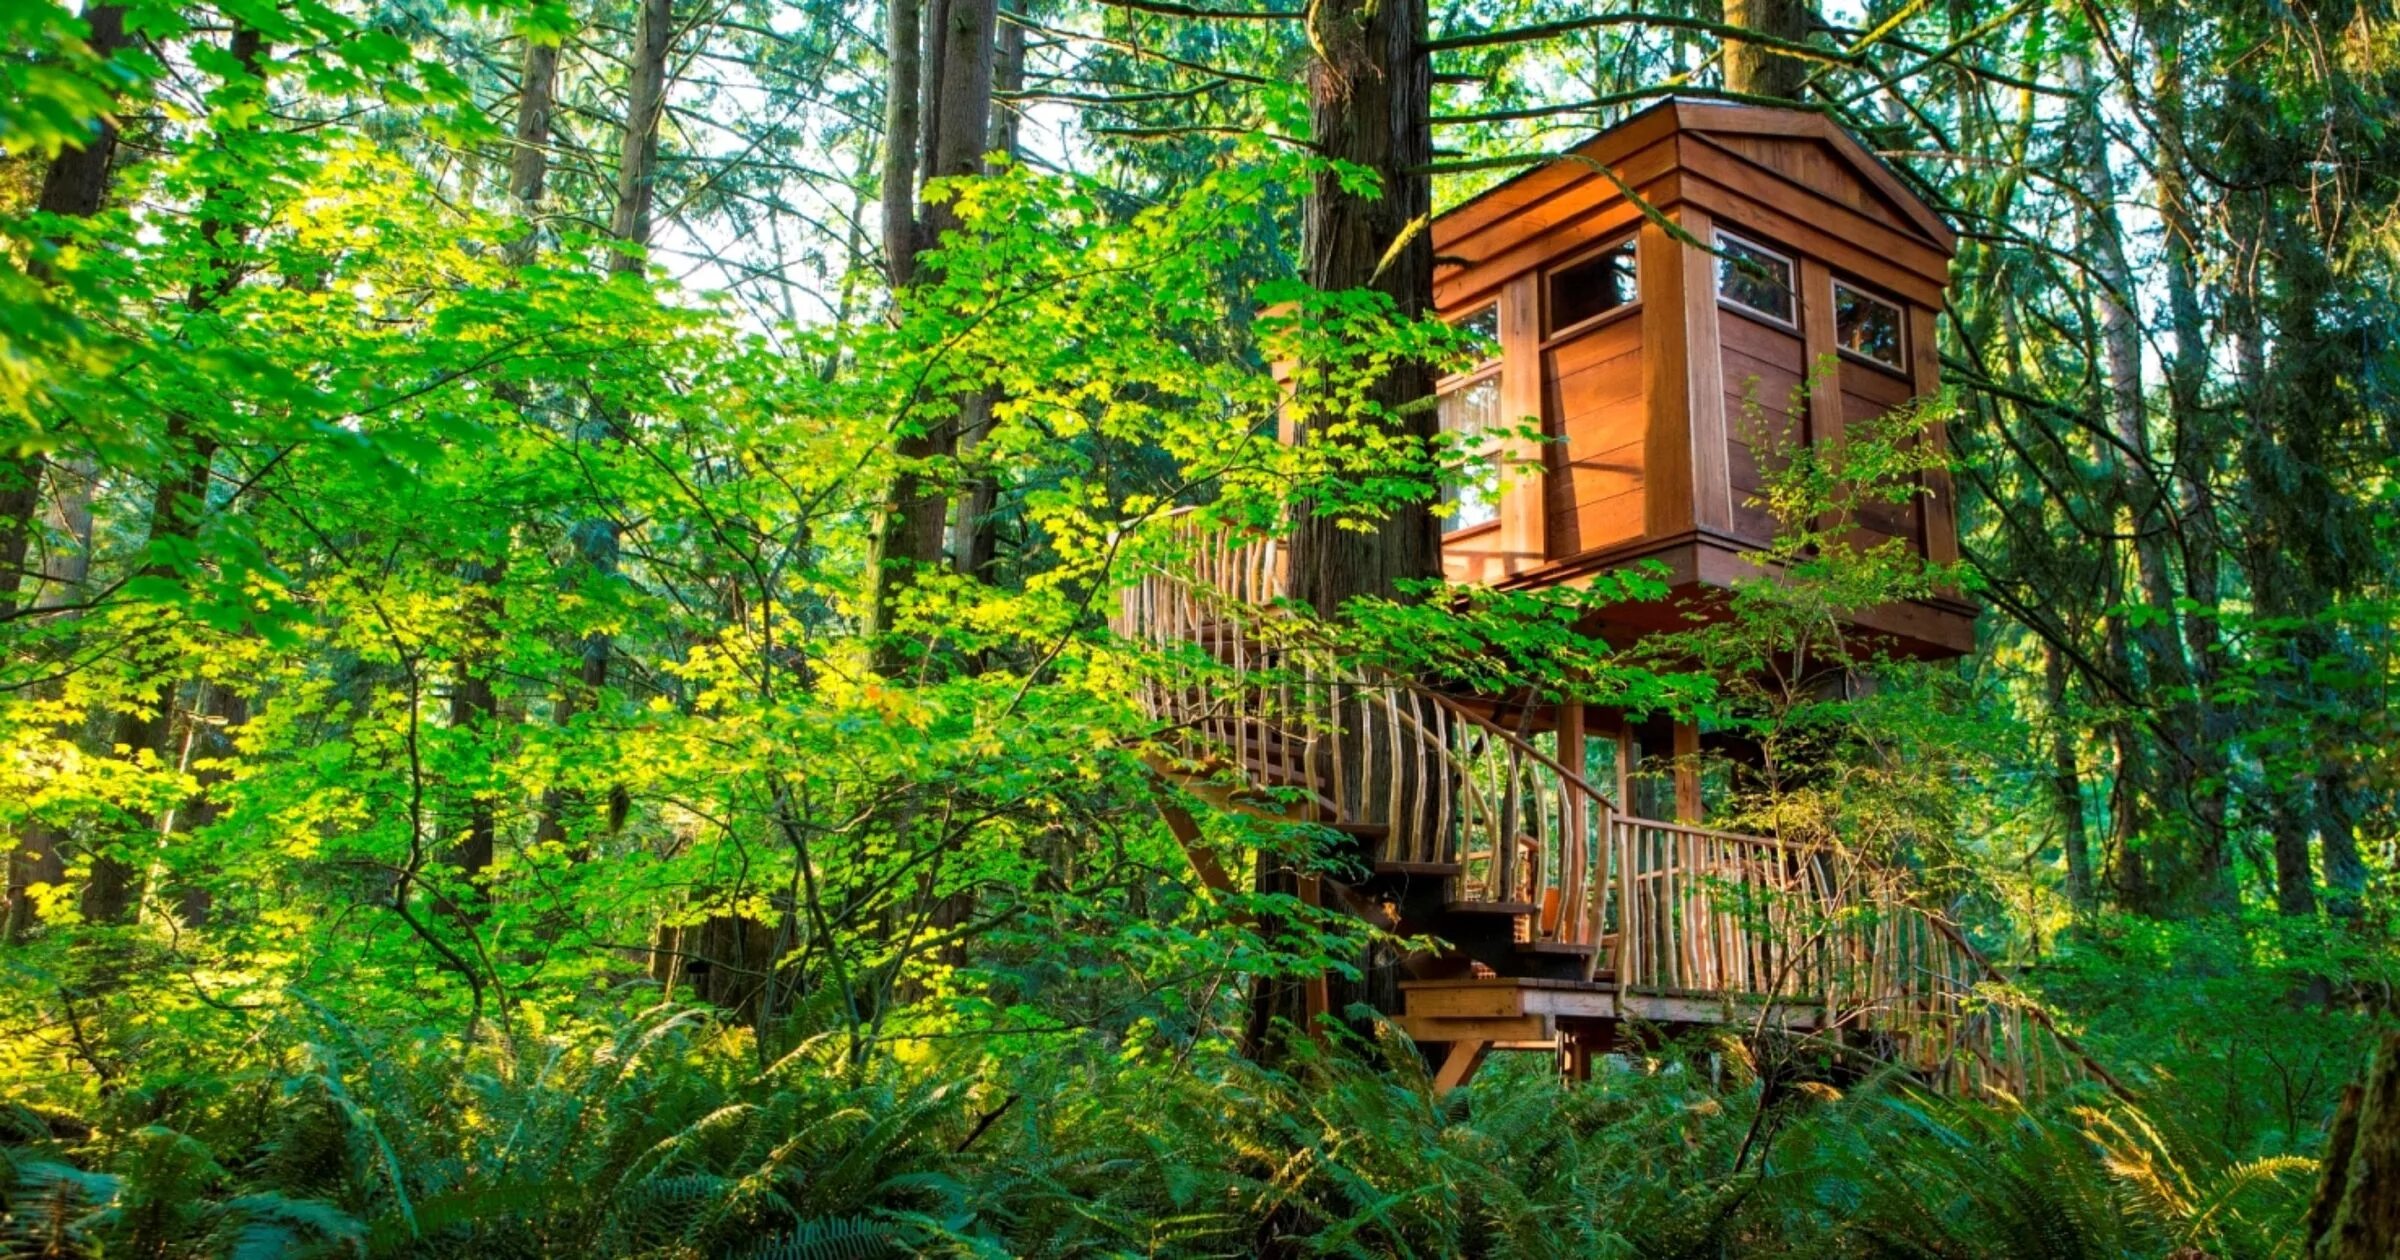 Жилой дом на дереве. Отель Treehouse домики на деревьях. Отель на дереве США штат Вашингтон. Домик среди деревьев. Эстетичный домик на дереве в лесу.